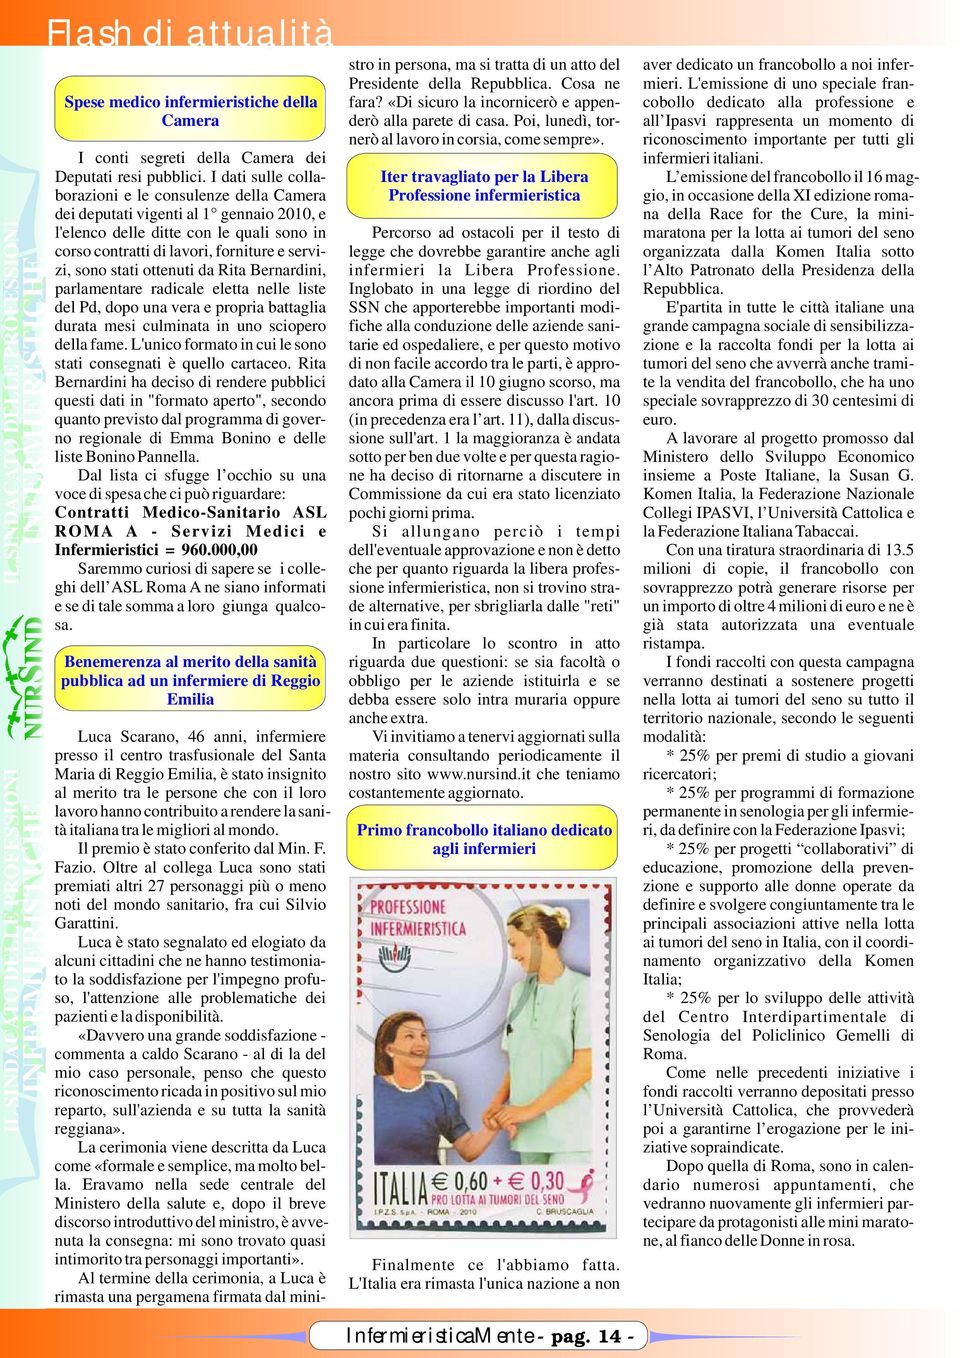 cobollo dedicato alla professione e all Ipasvi rappresenta un momento di riconoscimento importante per tutti gli I conti segreti della Camera dei infermieri italiani. Deputati resi pubblici.